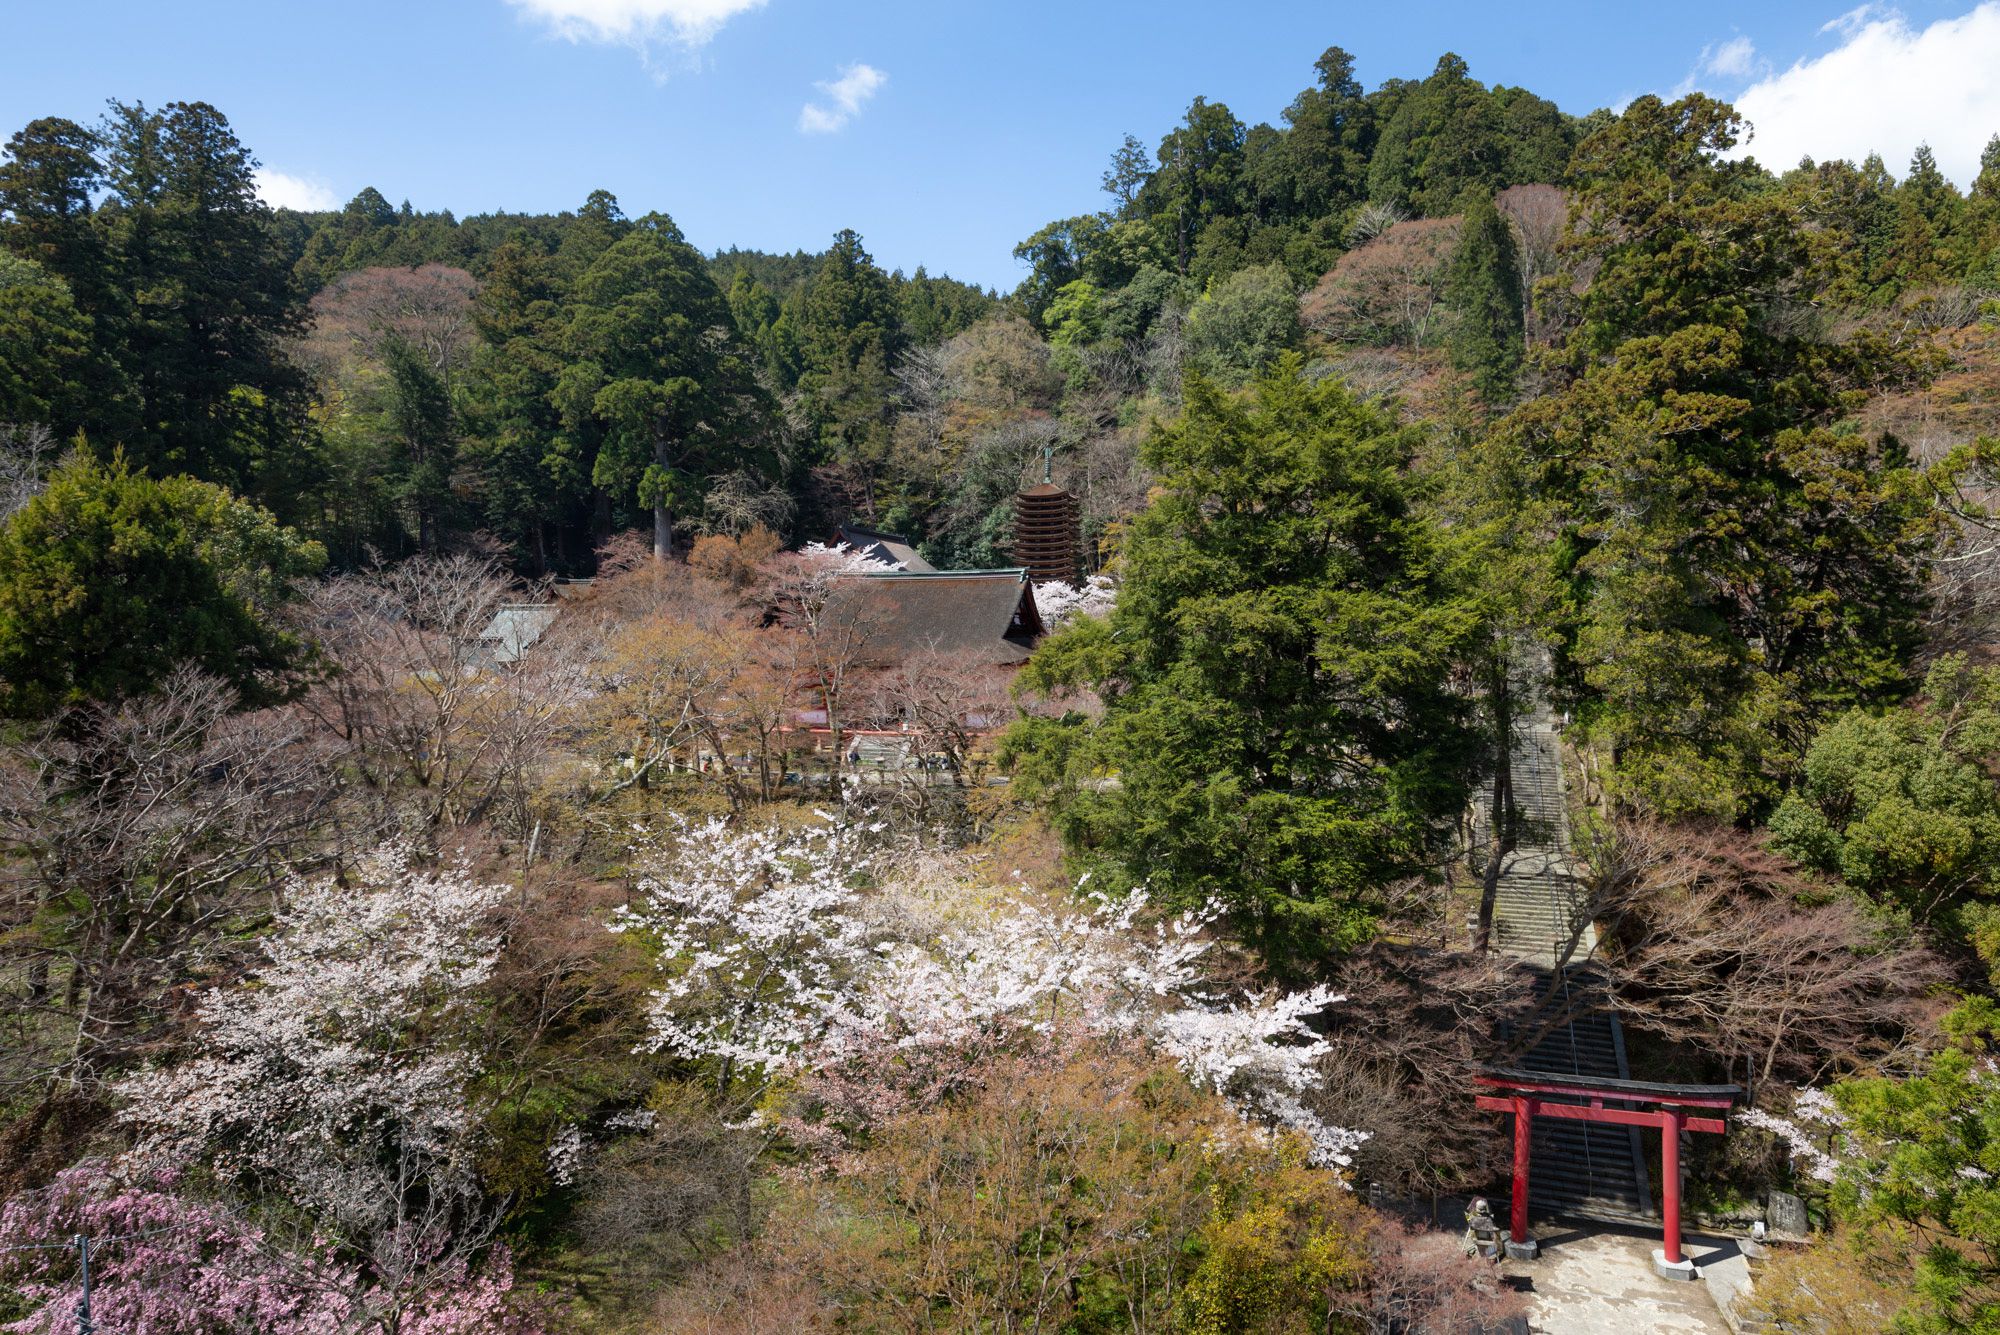 谷の向かい側から見た談山神社。鳥居と塔が同居している景色は、神仏習合の姿を残している。